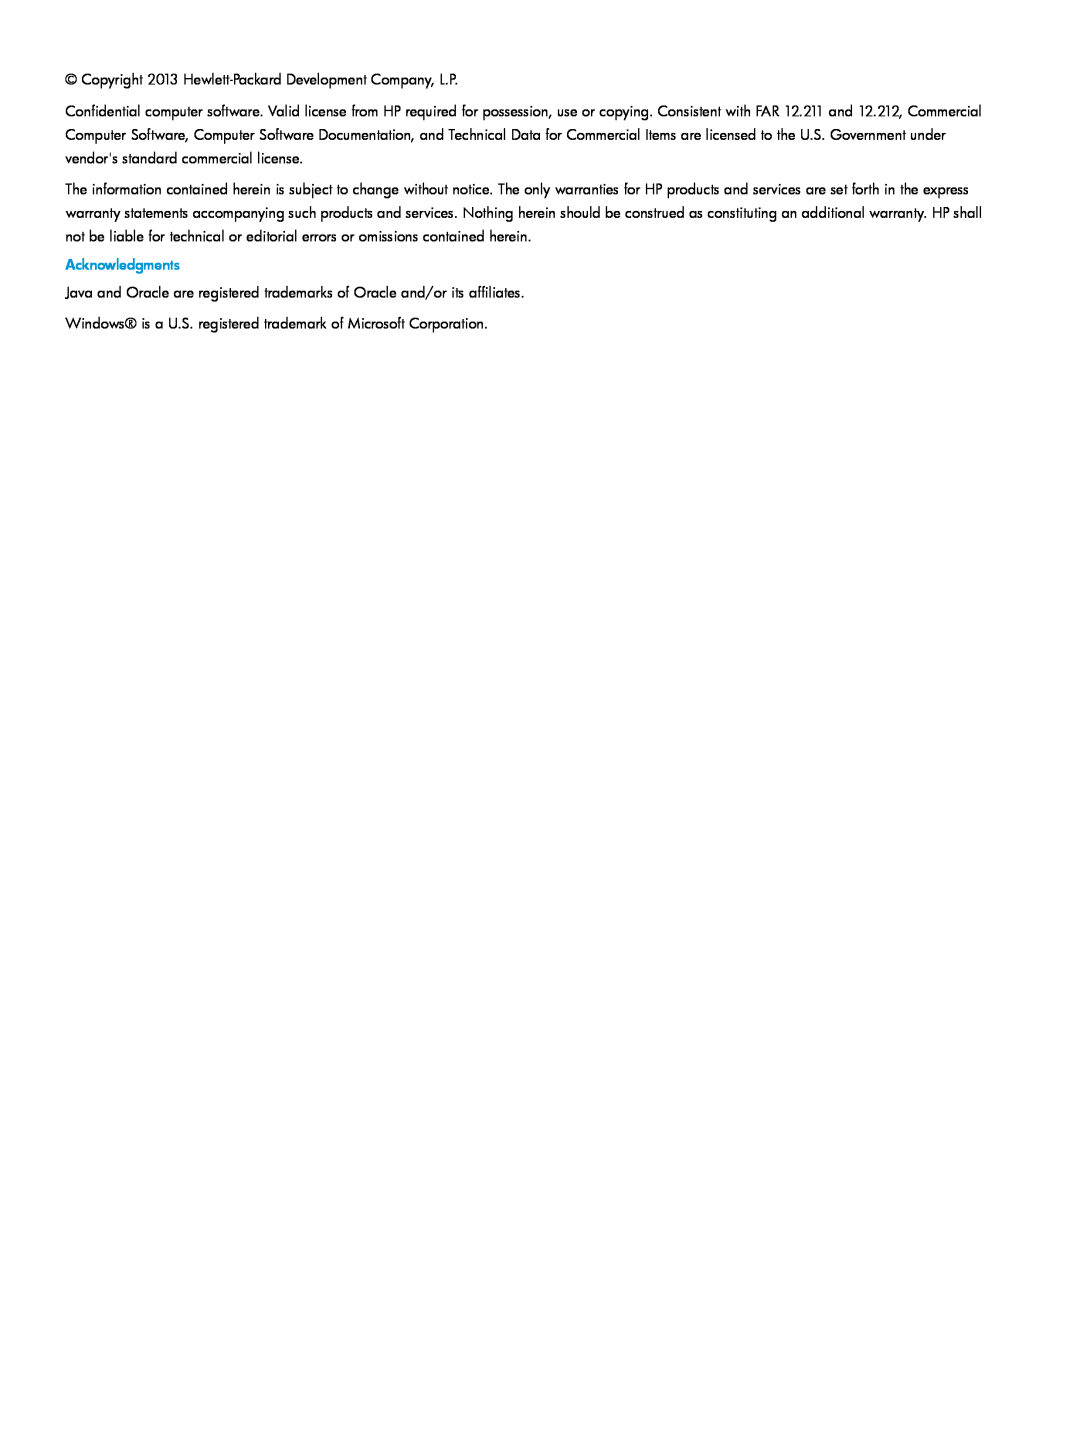 HP QR516B manual Copyright 2013 Hewlett-Packard Development Company, L.P, Acknowledgments 